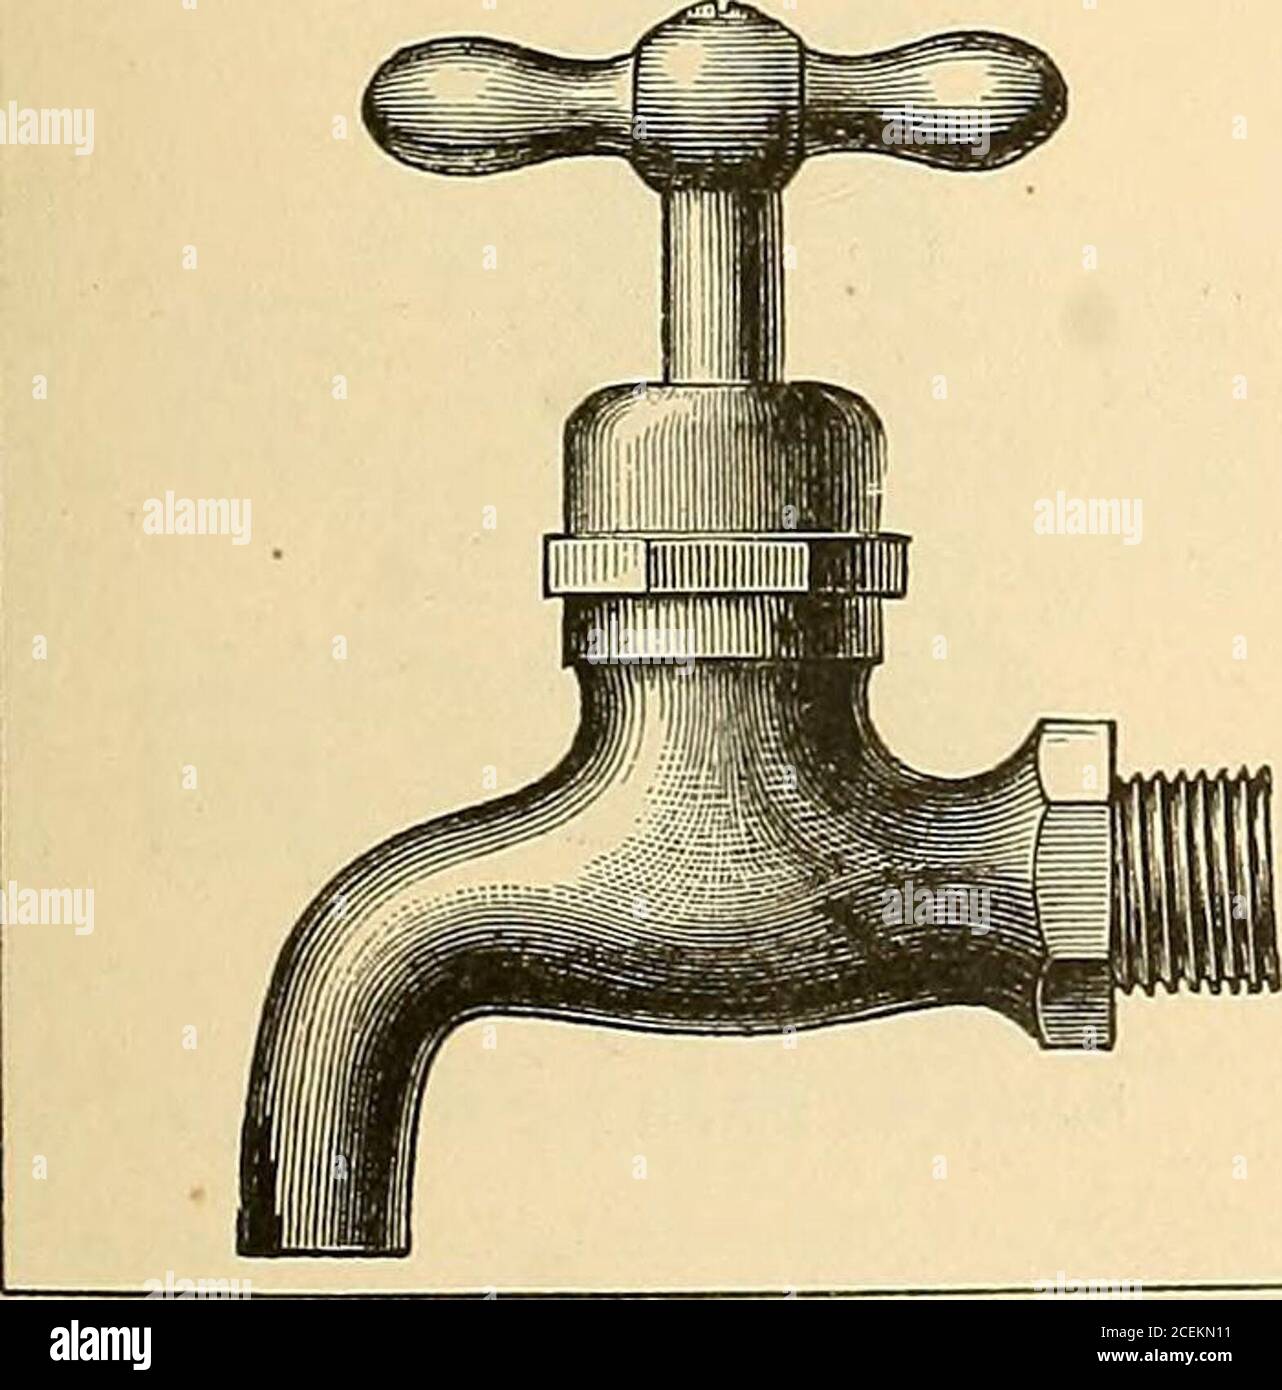 Catálogo ilustrado de tuberías de hierro forjado y fundido, accesorios para  tuberías de vapor y gas, válvulas de vapor de latón y hierro y gallos,  herramientas, suministros y otros artículos relacionados